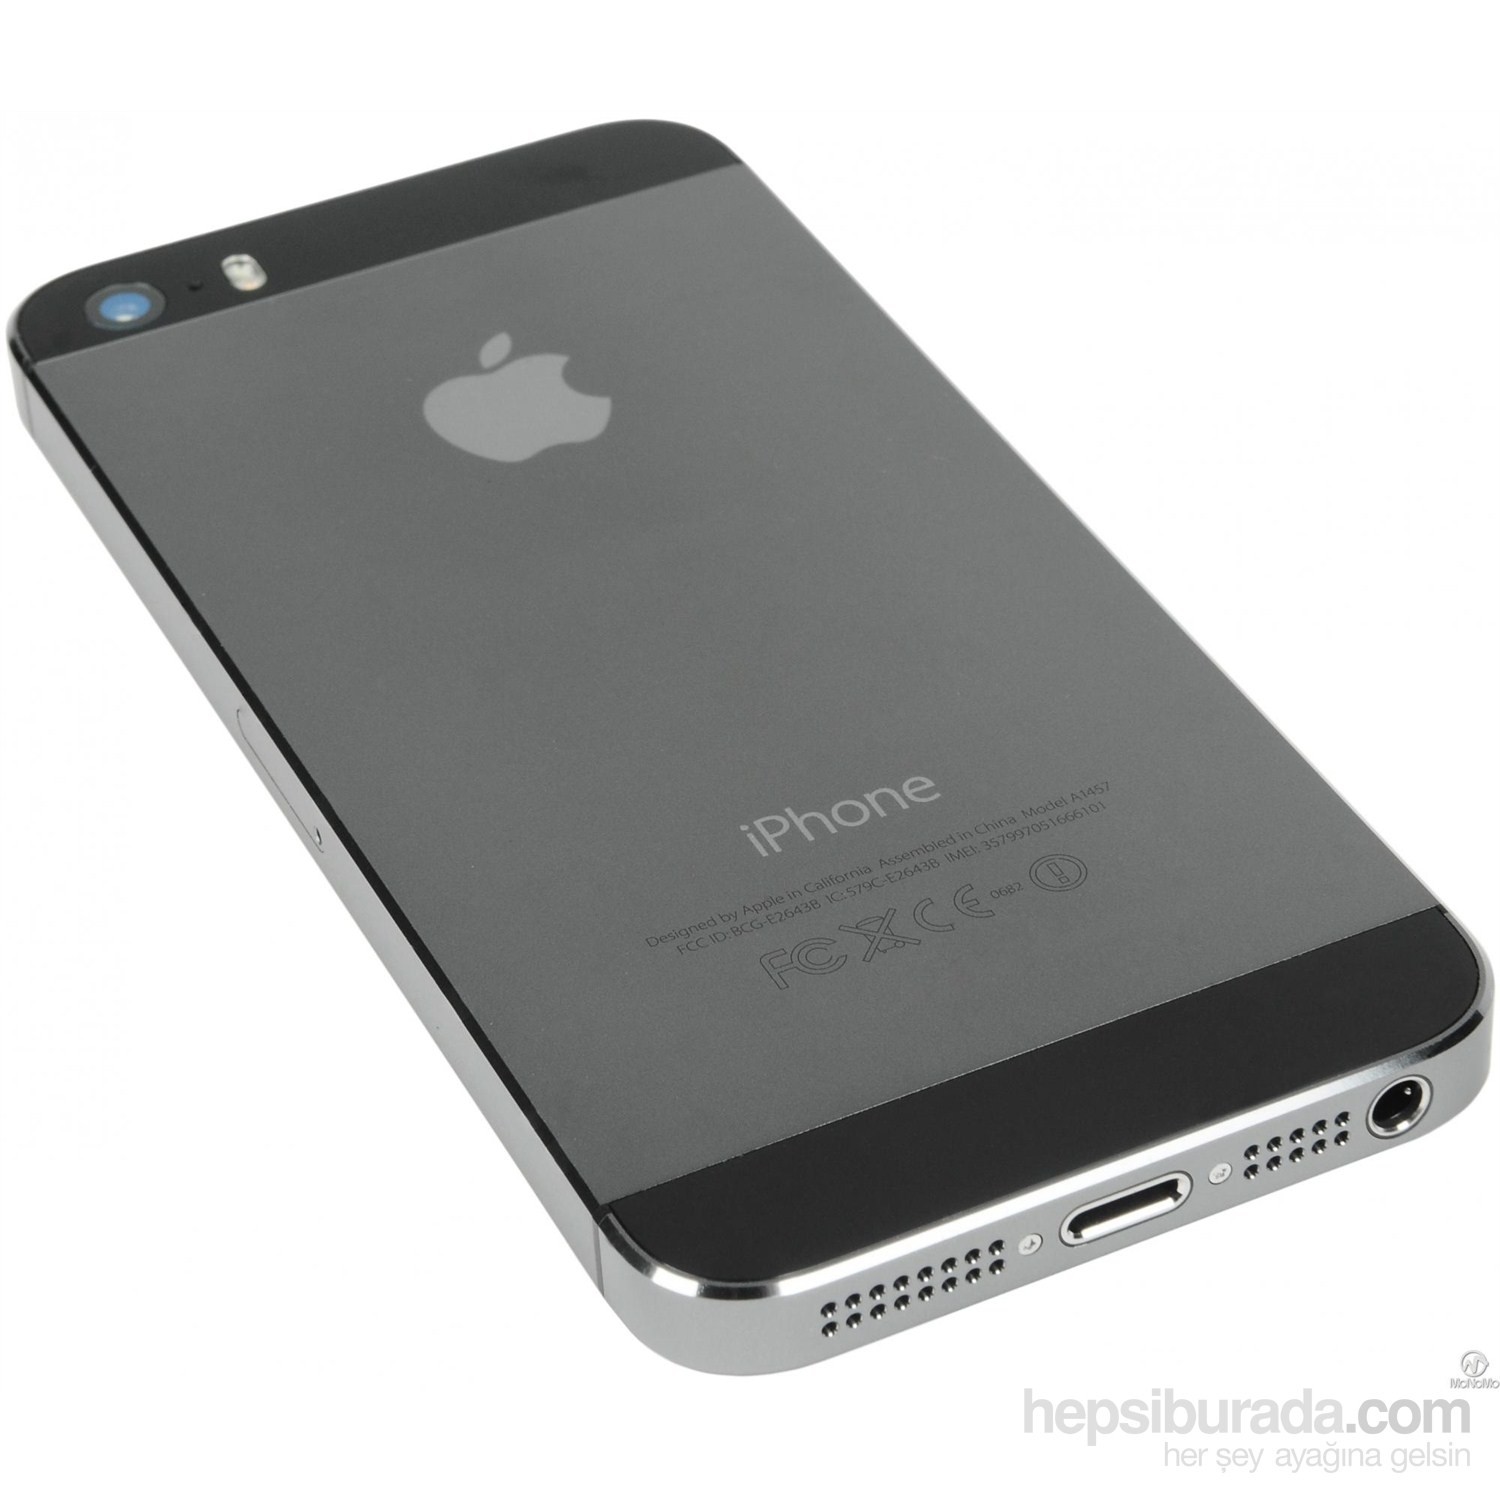 Apple iPhone 5s 64 GB ( Space Gray ) Fiyatı - Taksit Seçenekleri